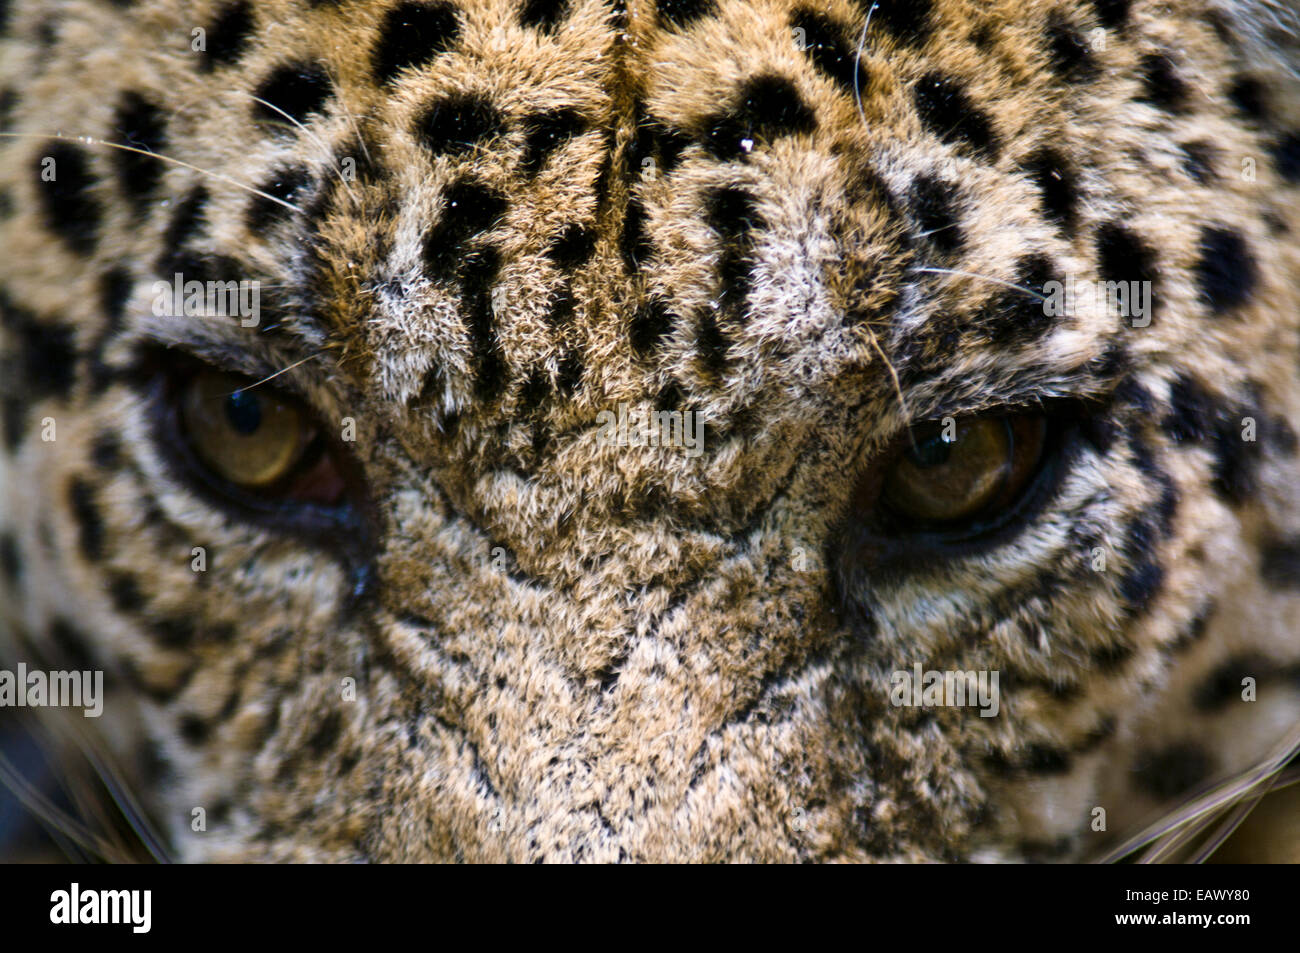 La mirada amenazante de un Jaguar, los principales depredadores de la selva amazónica. Foto de stock